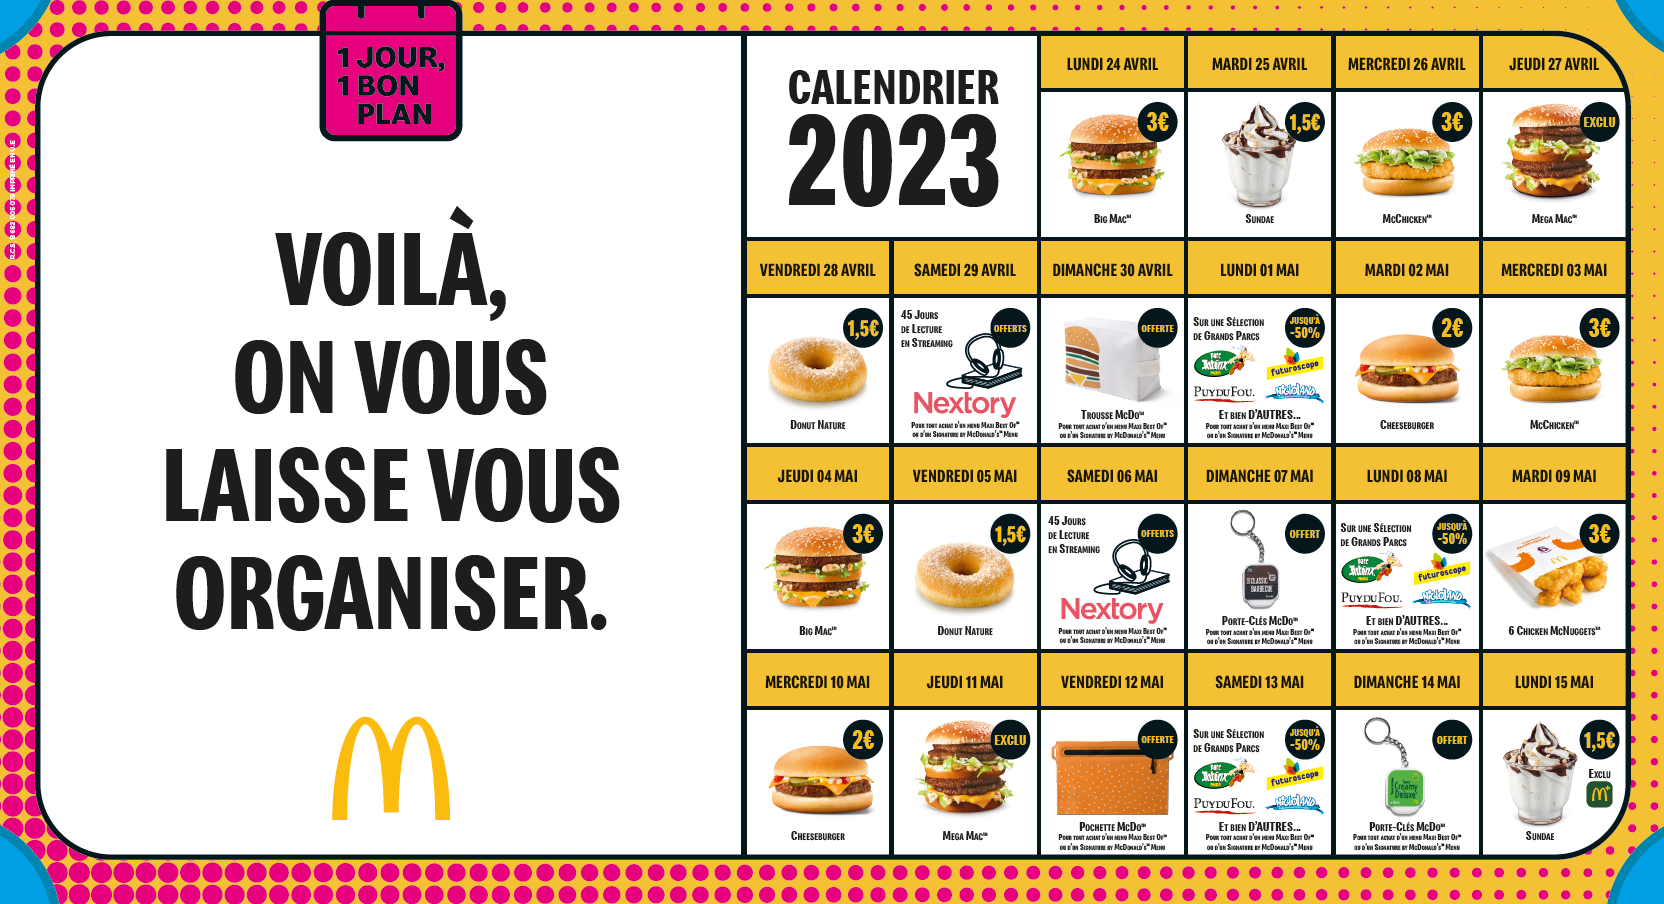 1 JOUR 1 BON PLAN, PRÊT, FEU, PARTEZ ! - McDonald's Strasbourg